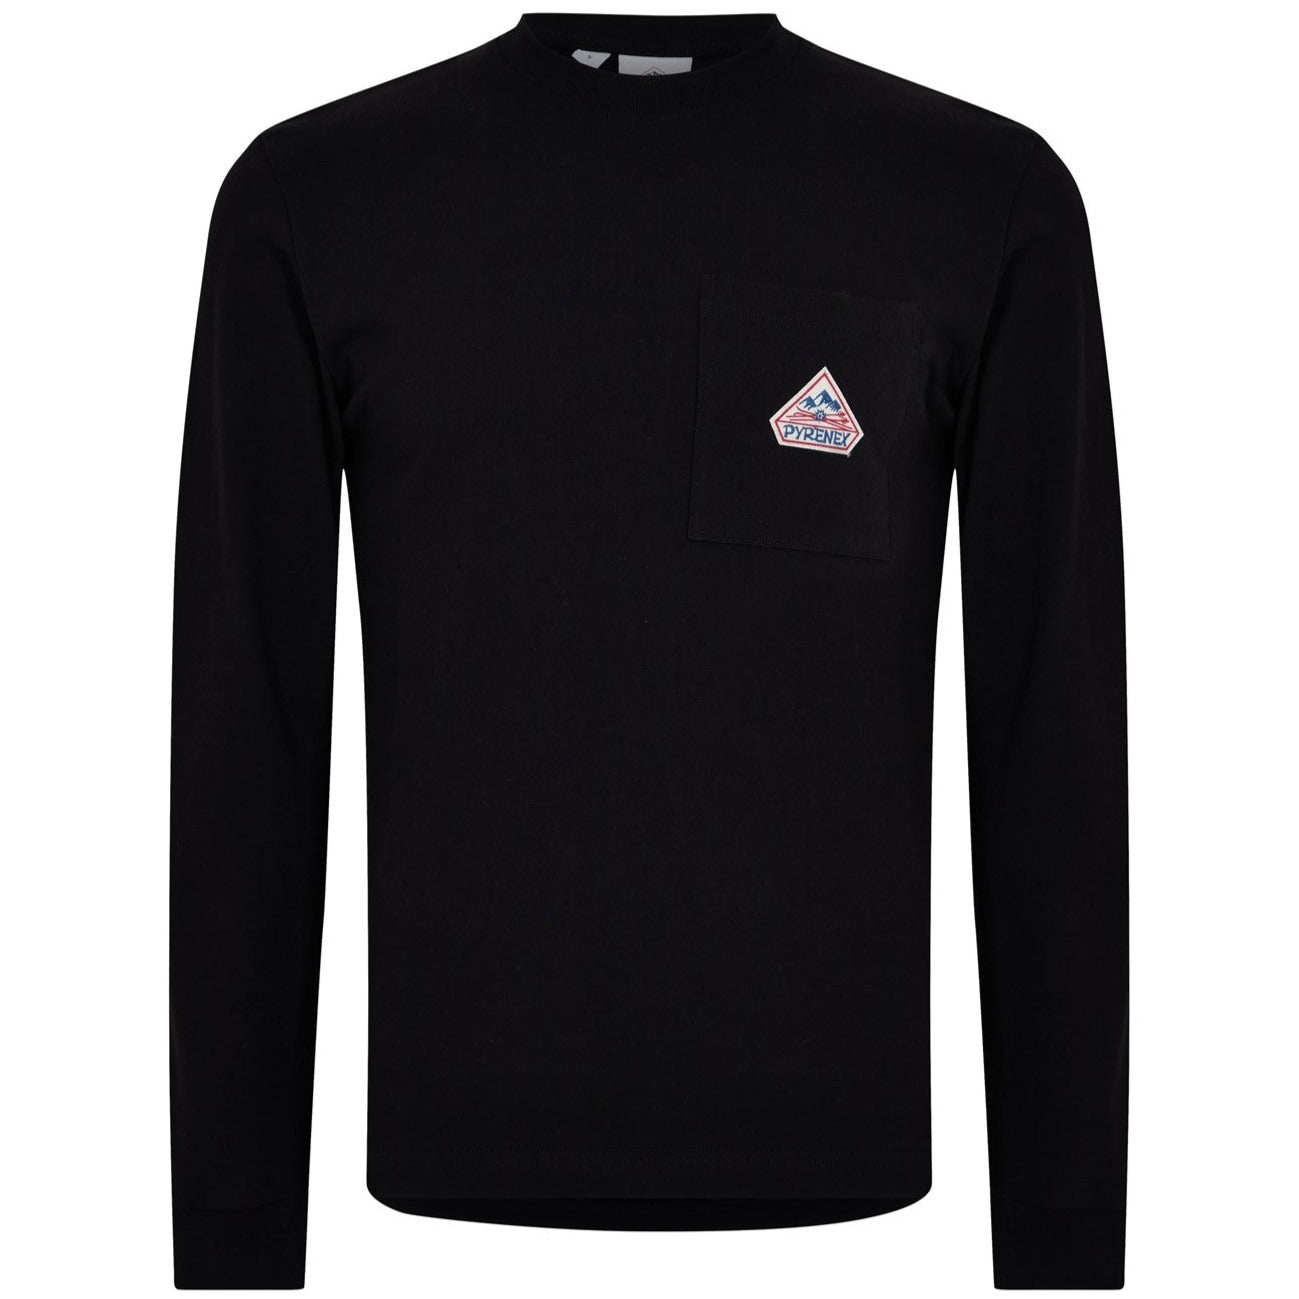 Pyrenex Black Logo Sweatshirt - DANYOUNGUK